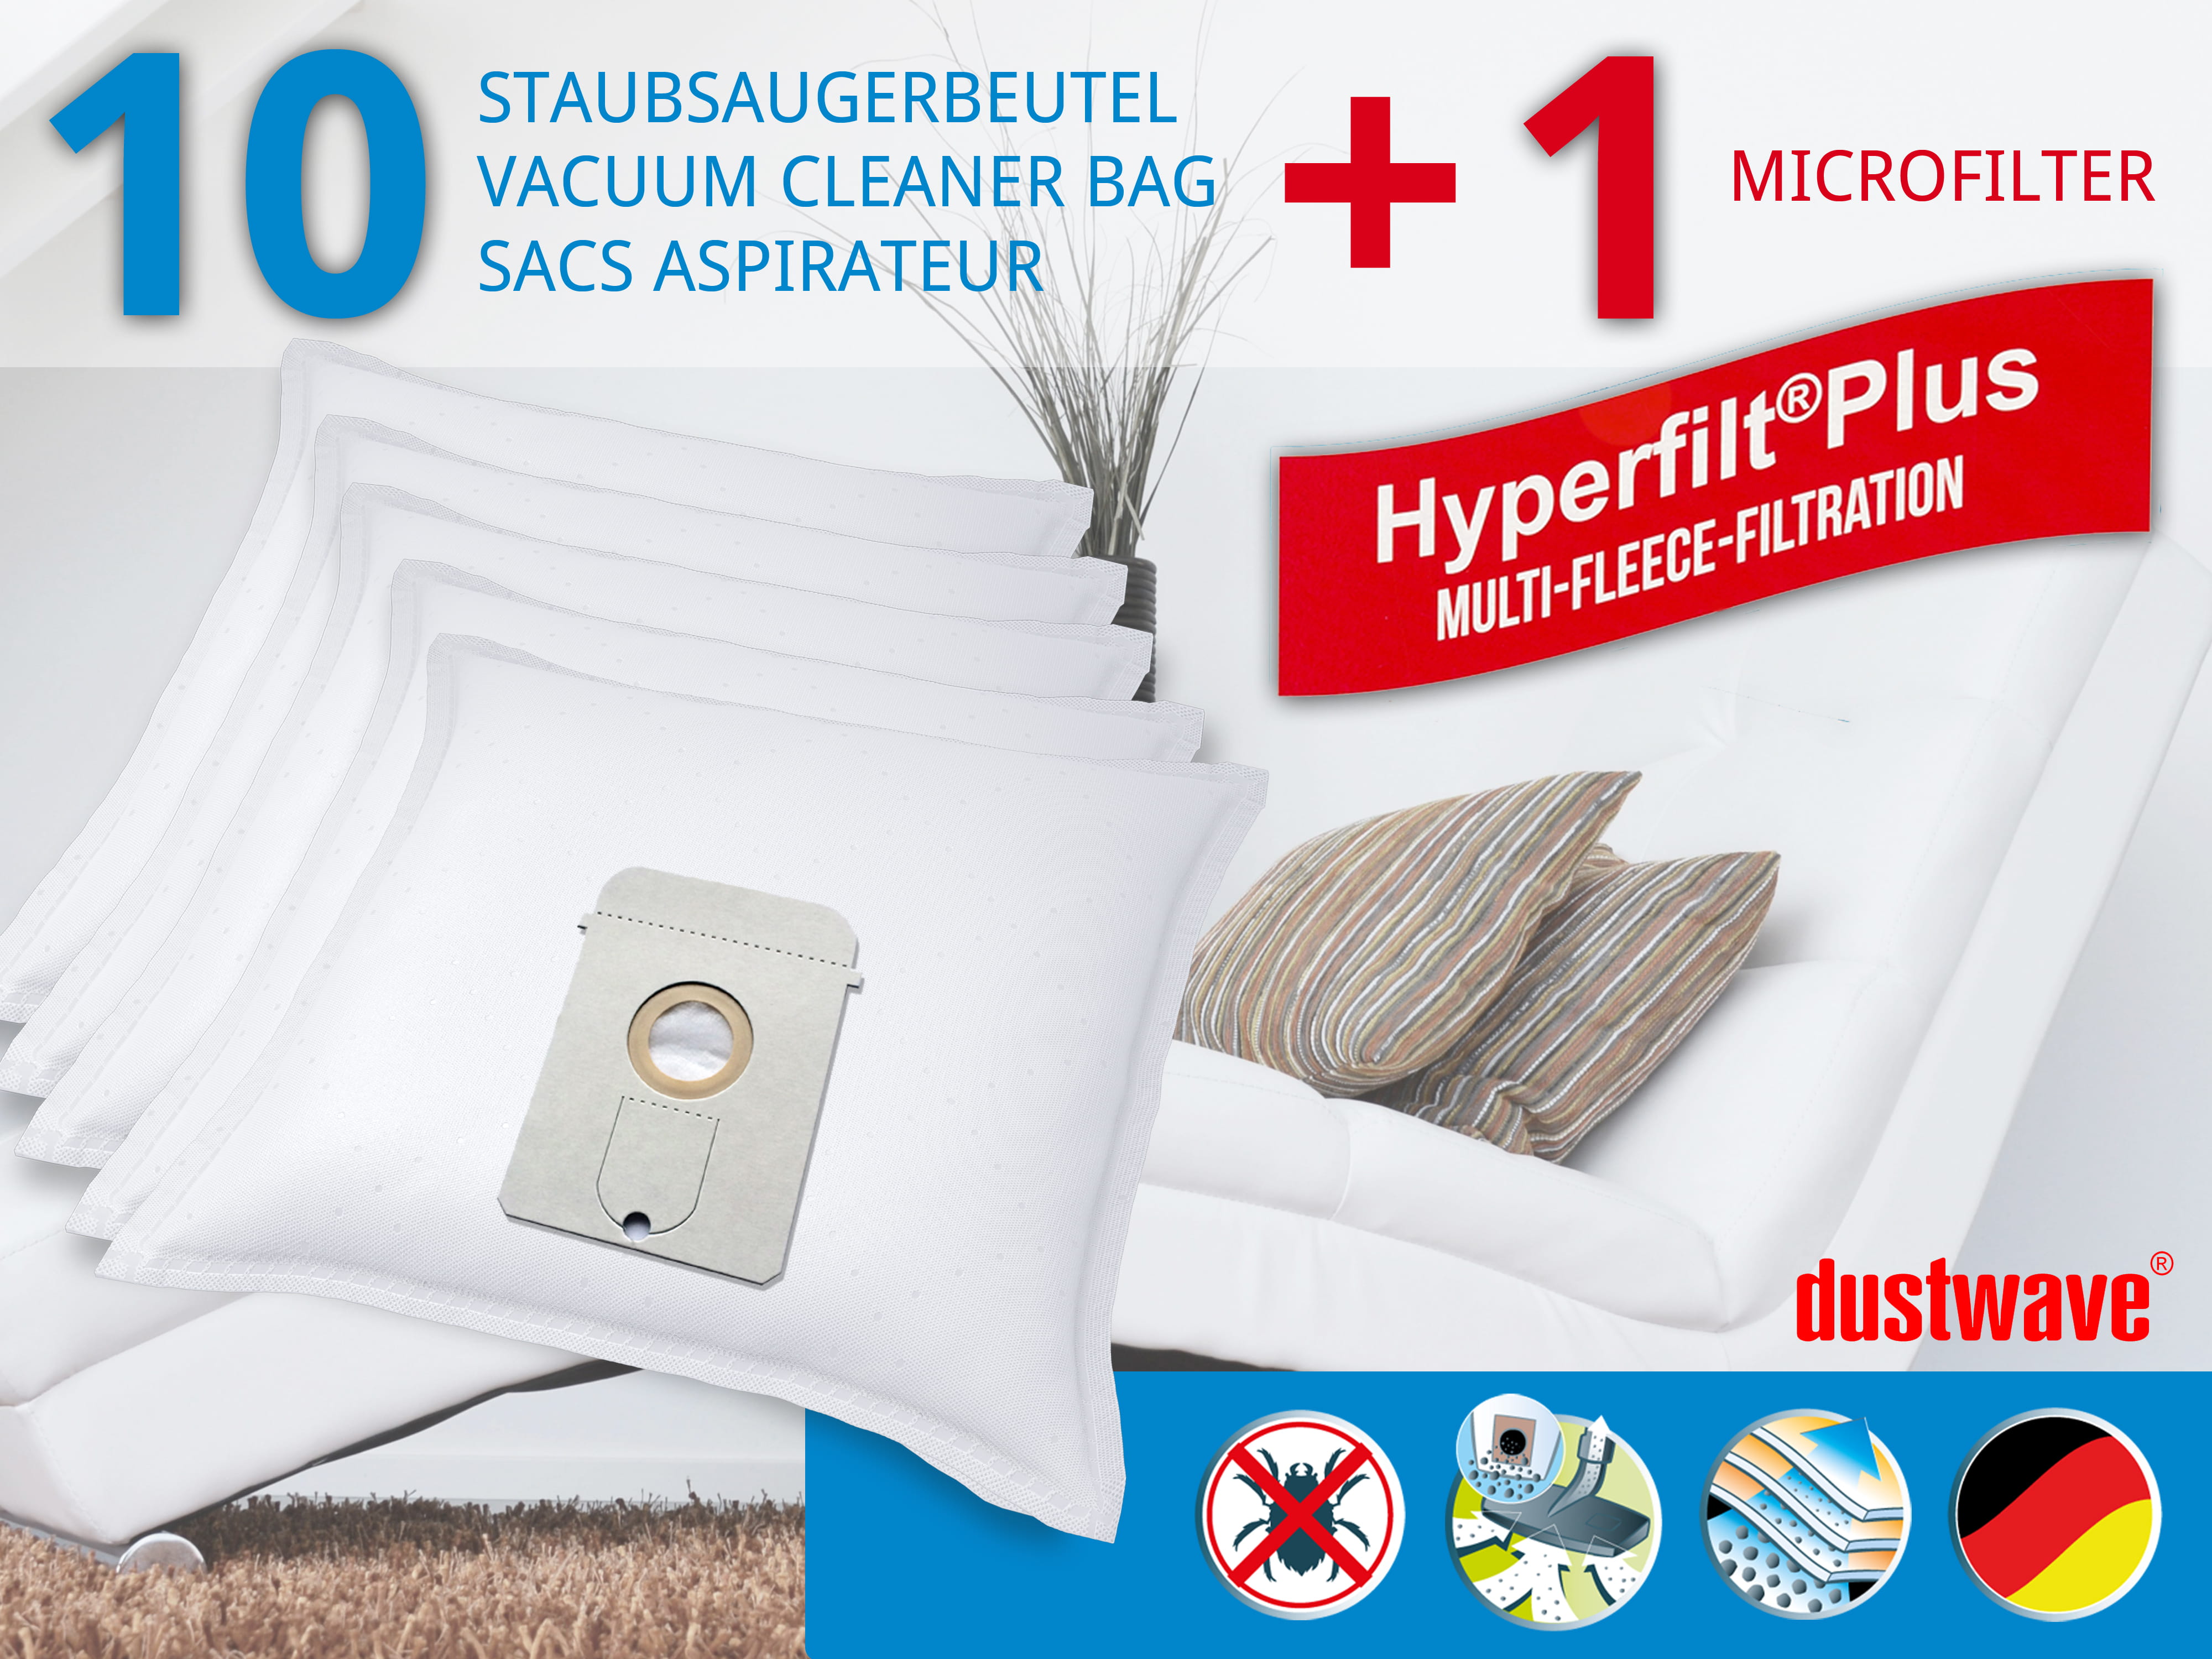 Dustwave® 10 Staubsaugerbeutel für AEG Vampyr 6210 Electronic - hocheffizient, mehrlagiges Mikrovlies mit Hygieneverschluss - Made in Germany